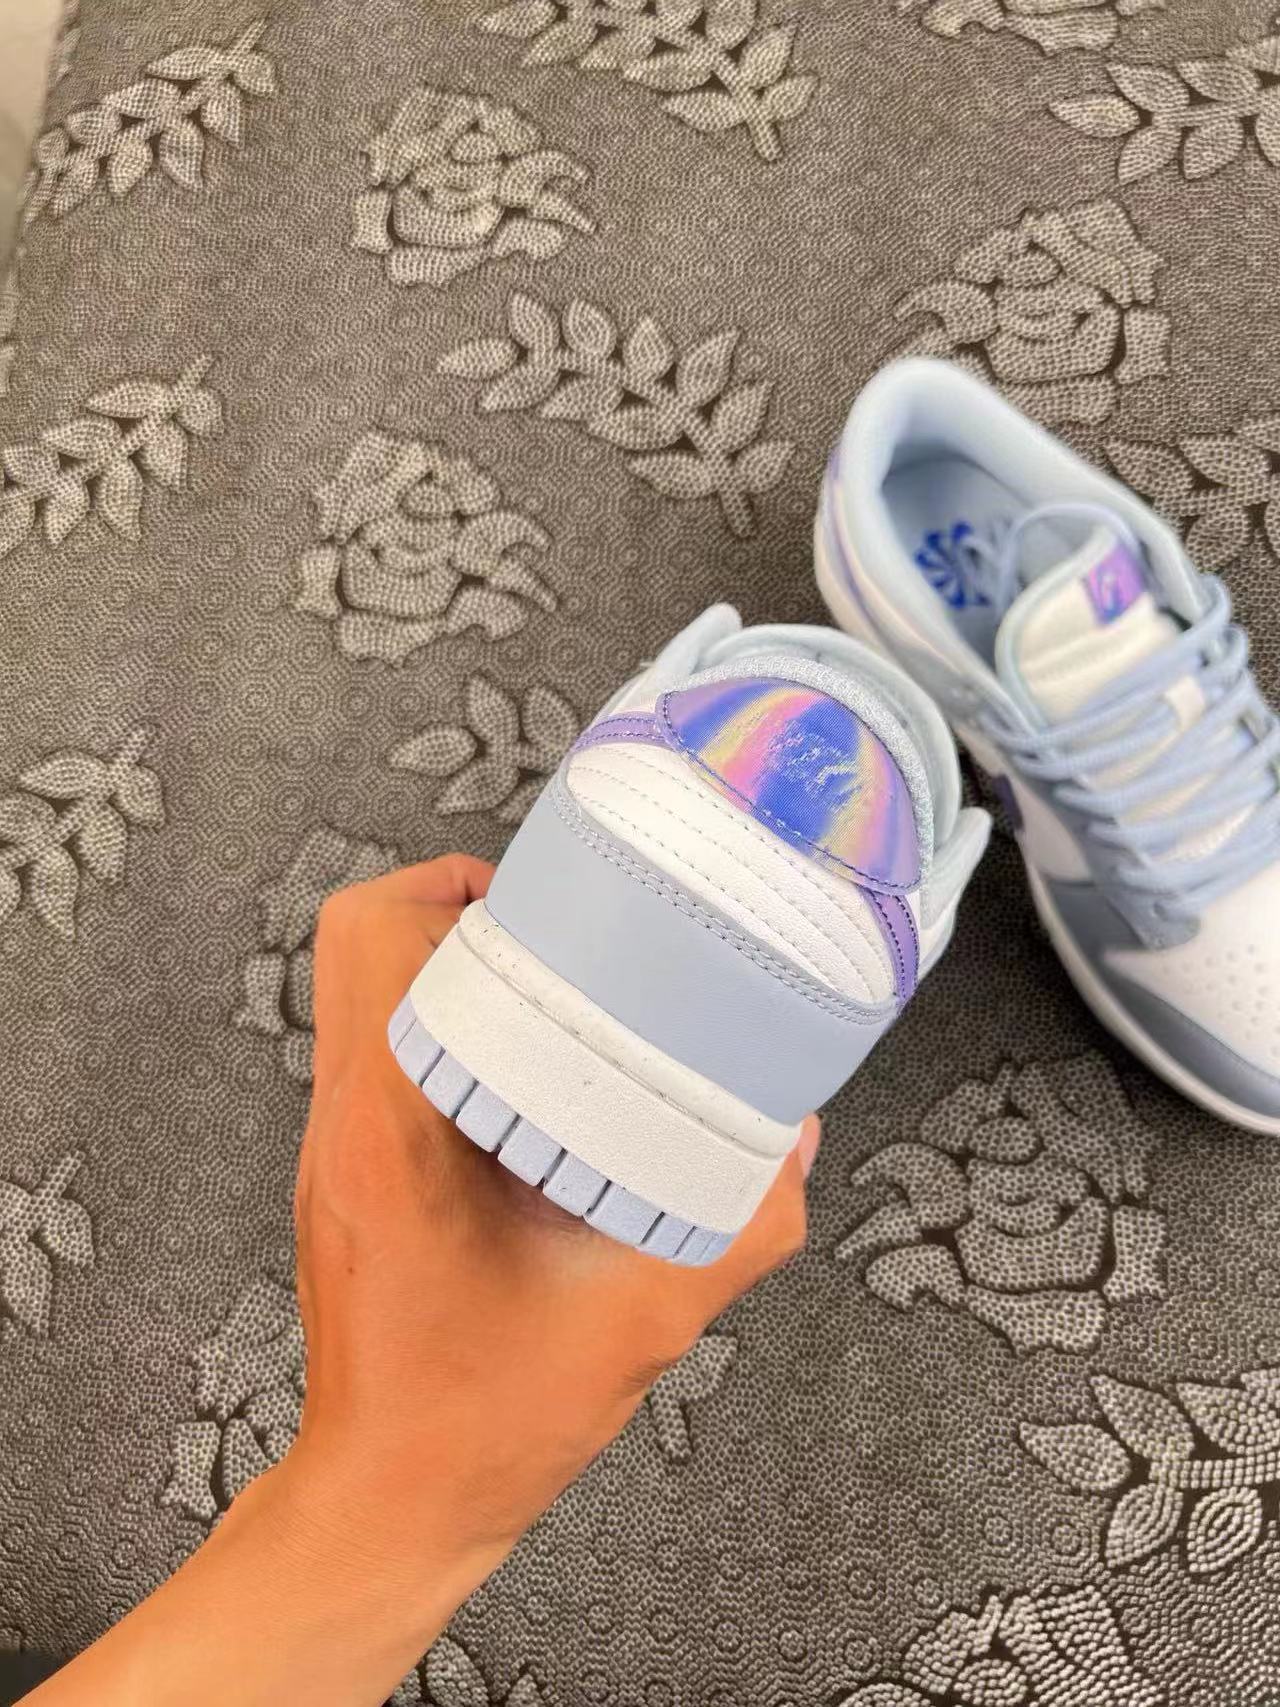 ? 正品定制Nike Dunk Low渲染白紫配色 渲染款系列 镭射配色 ?